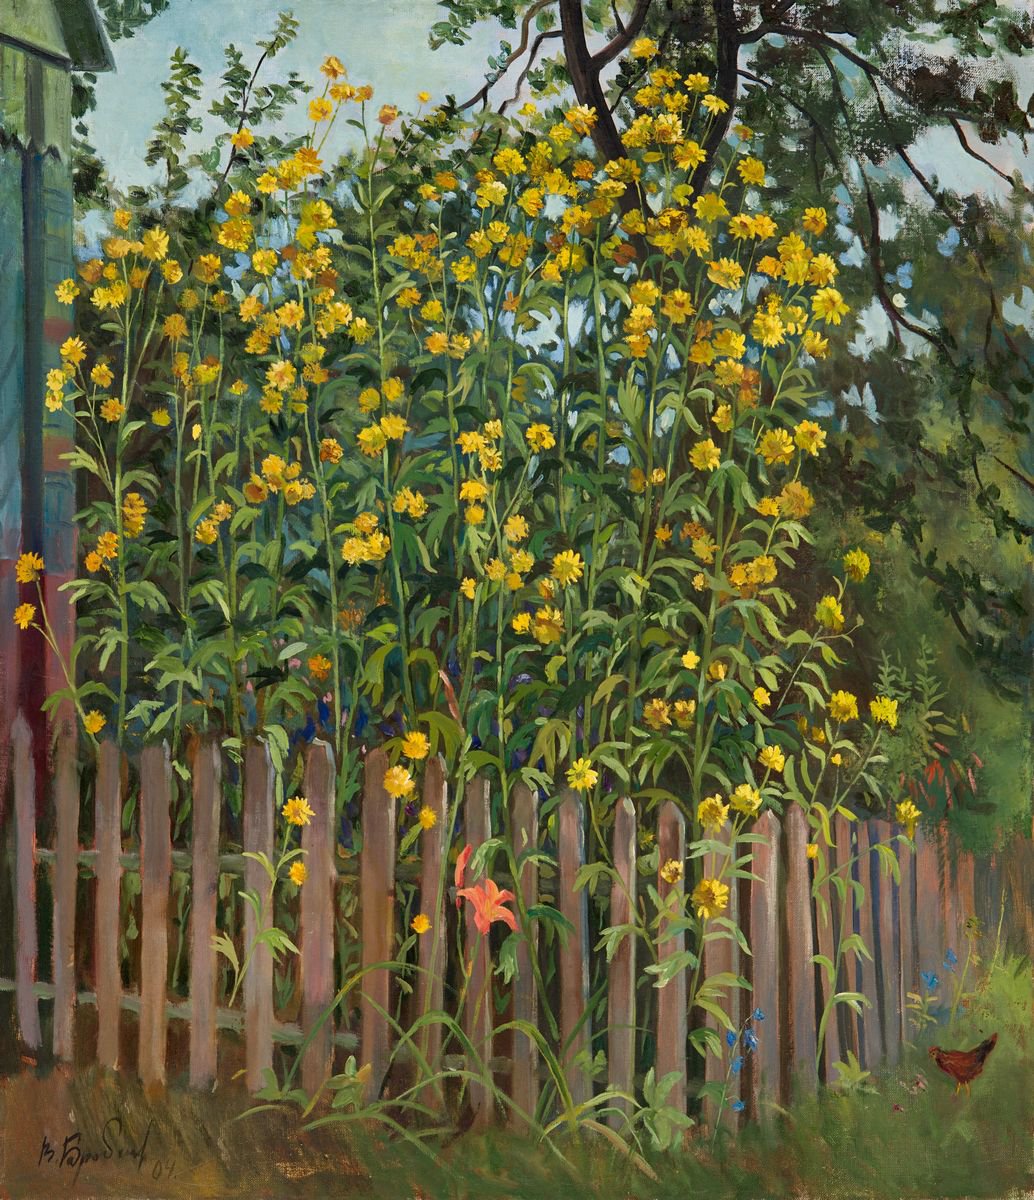 Chrysanthemums by Viktar Barabantsau